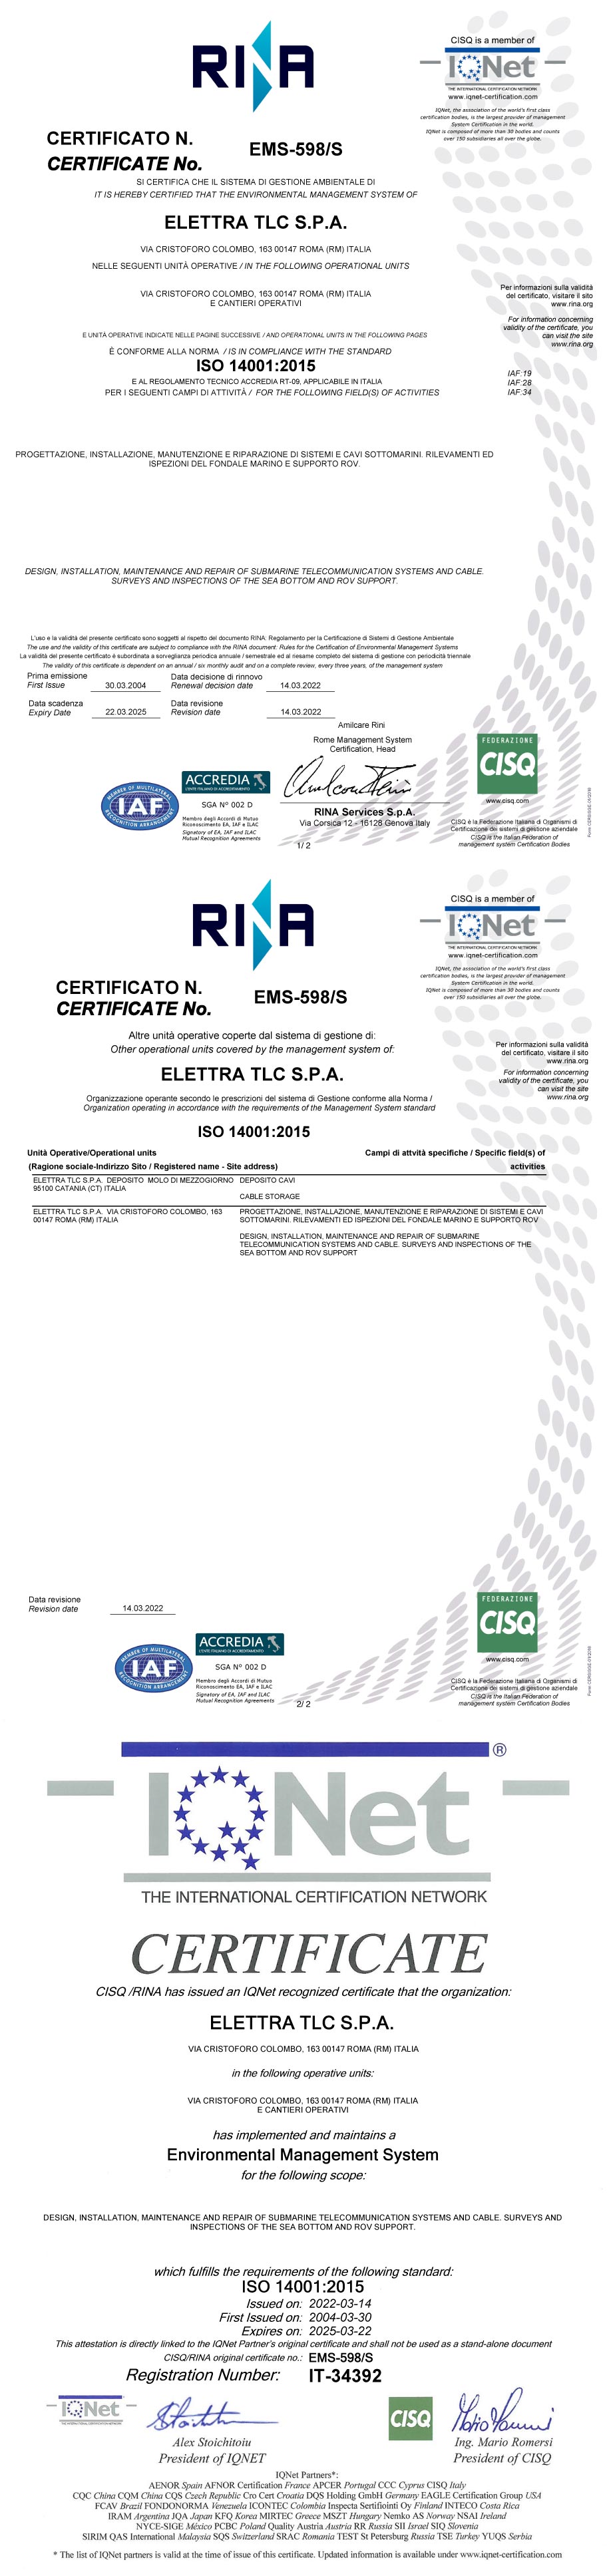 Rina Certificate 2004